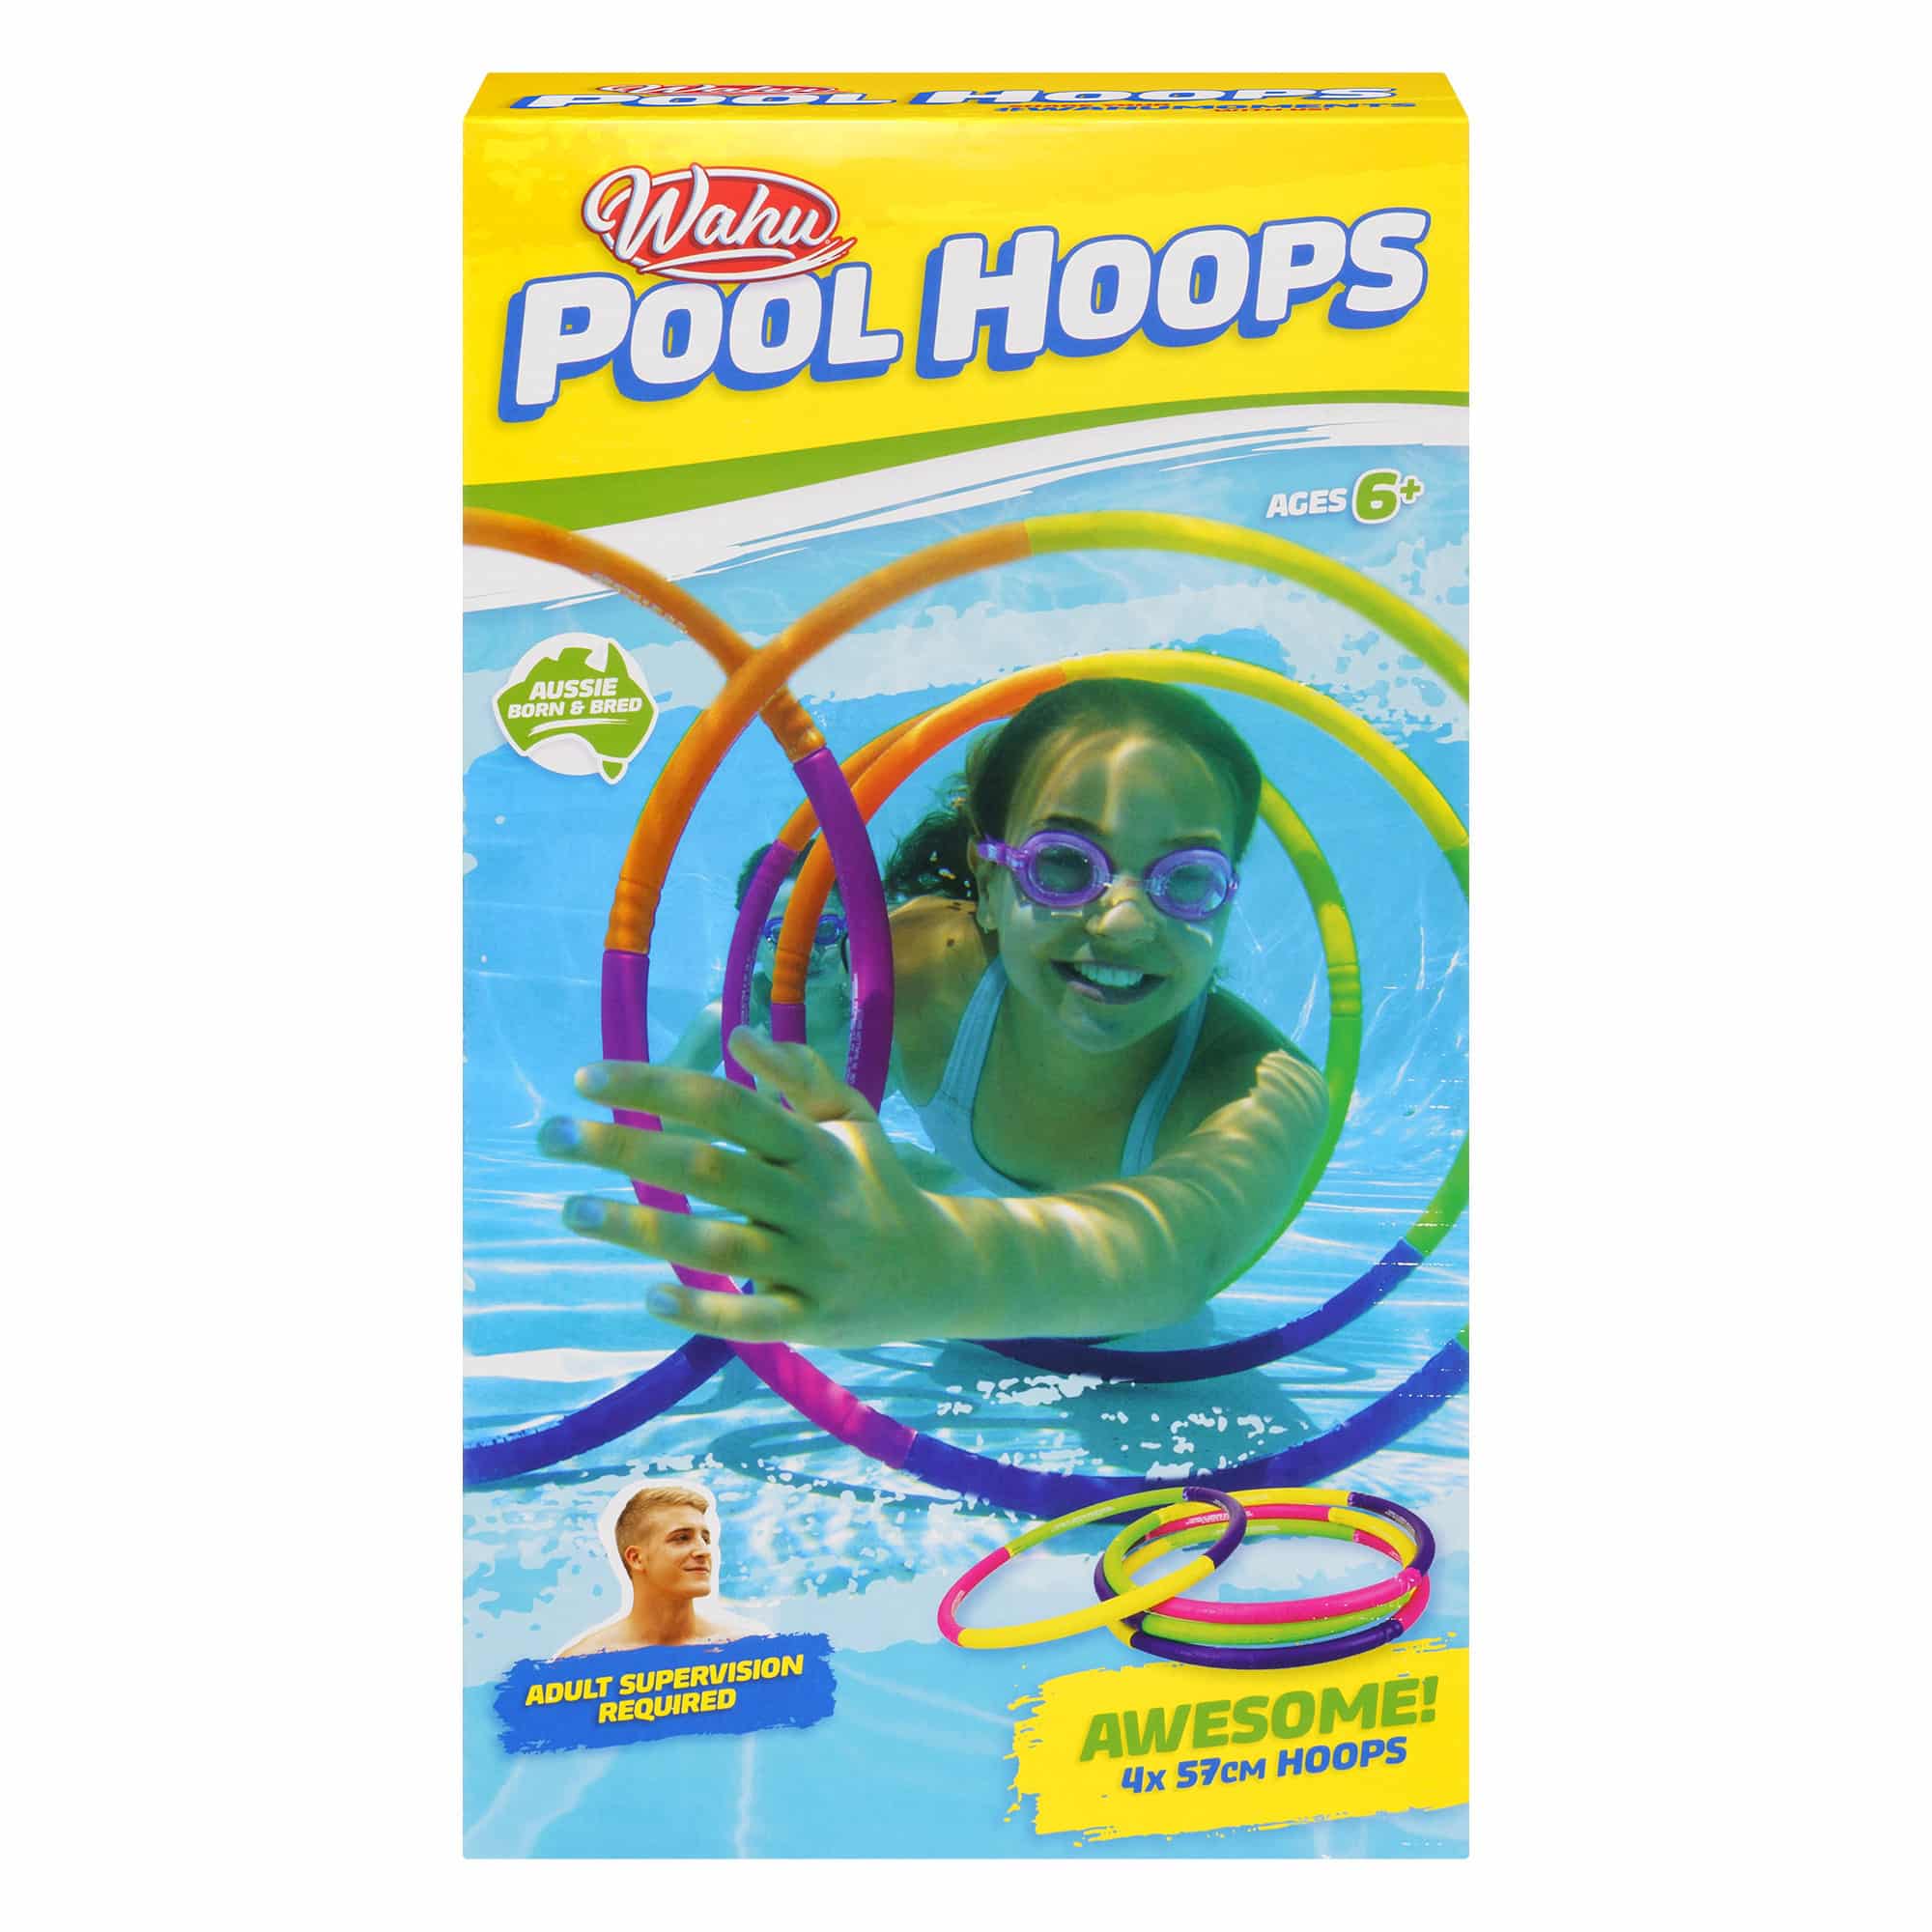 Wahu - Pool Party - Pool Hoops